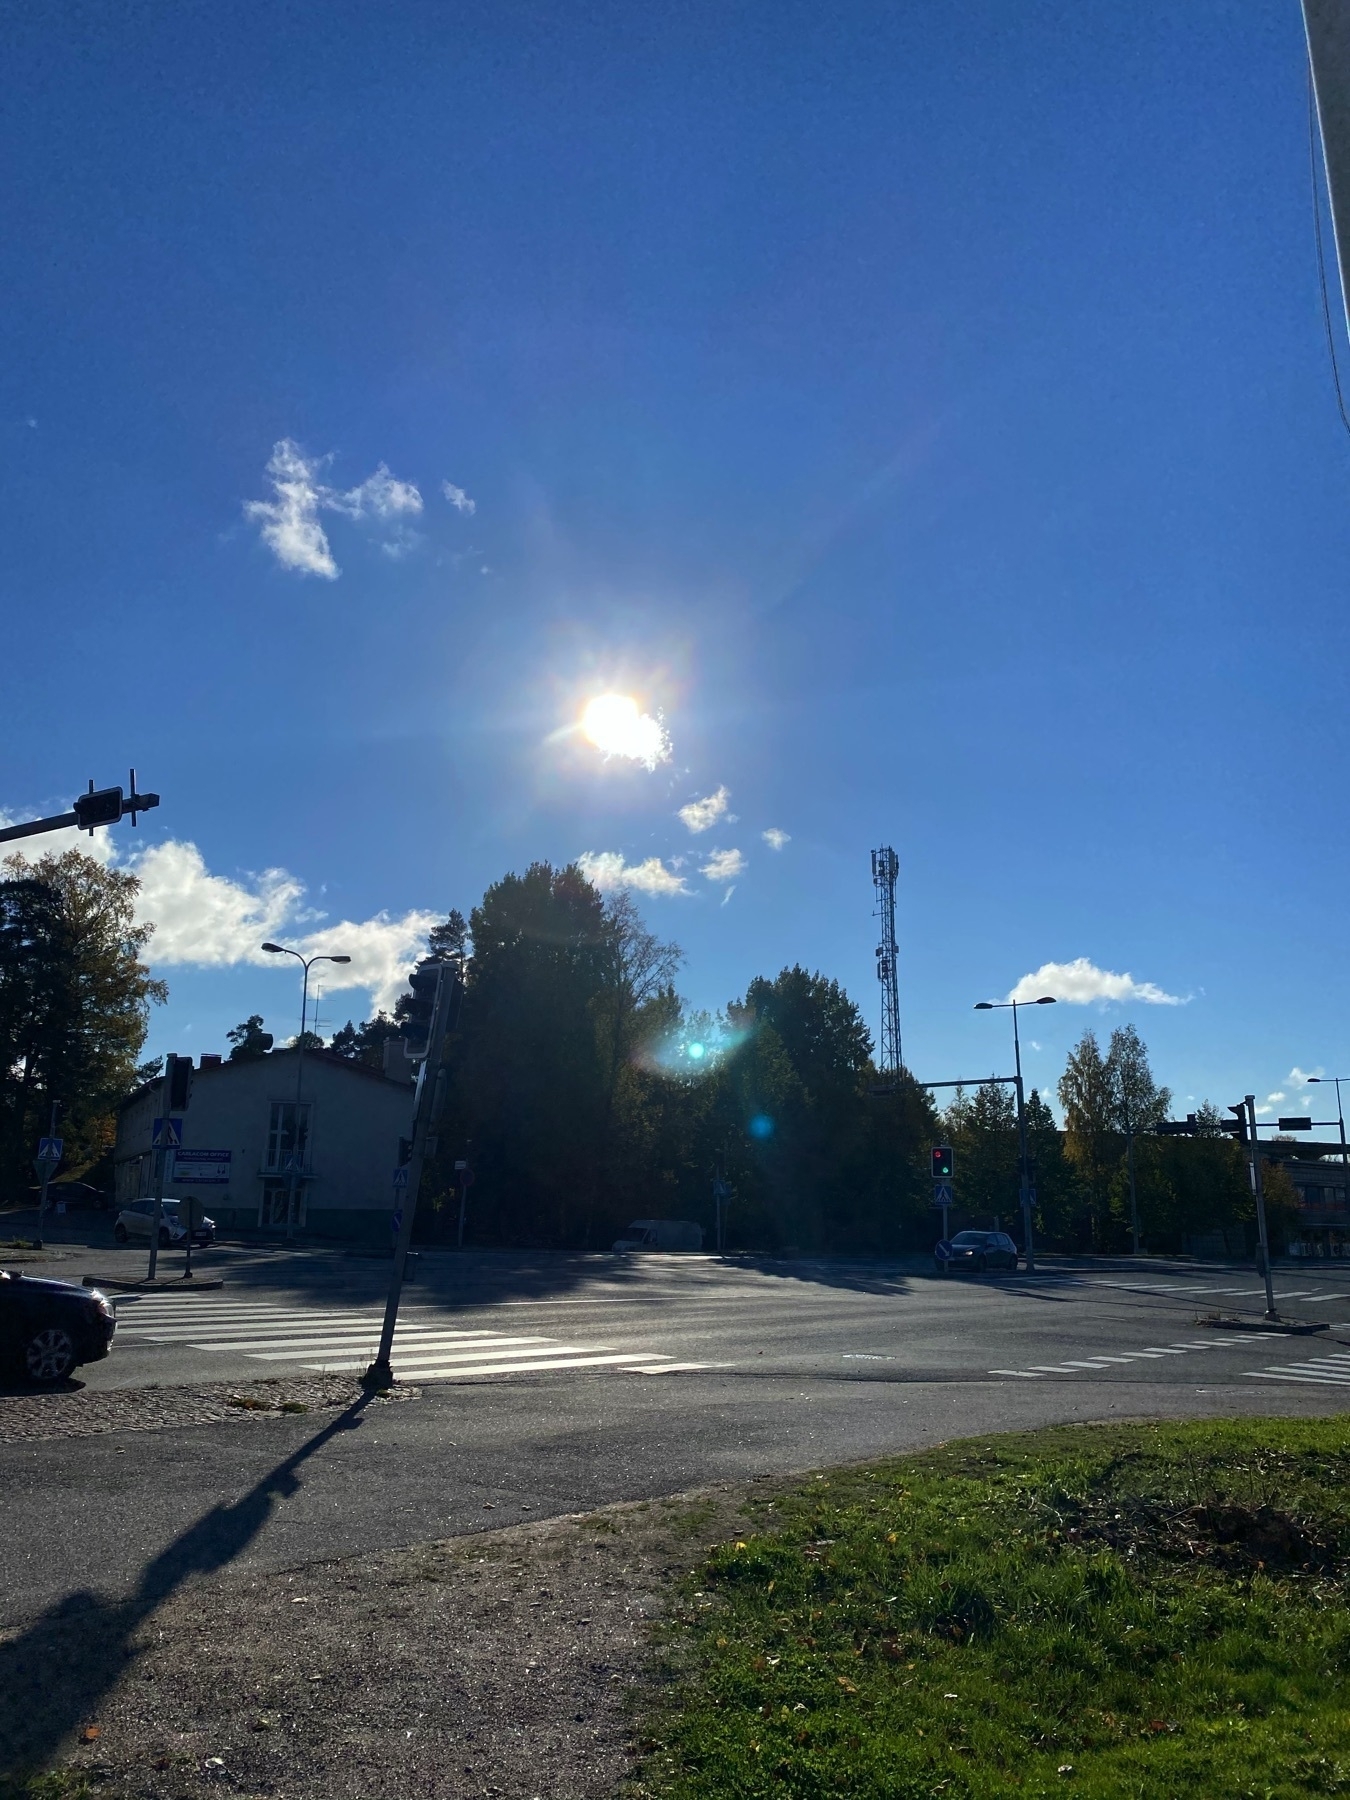 Espoo Finland at 14:02 today, sun, asphalt, long shadows